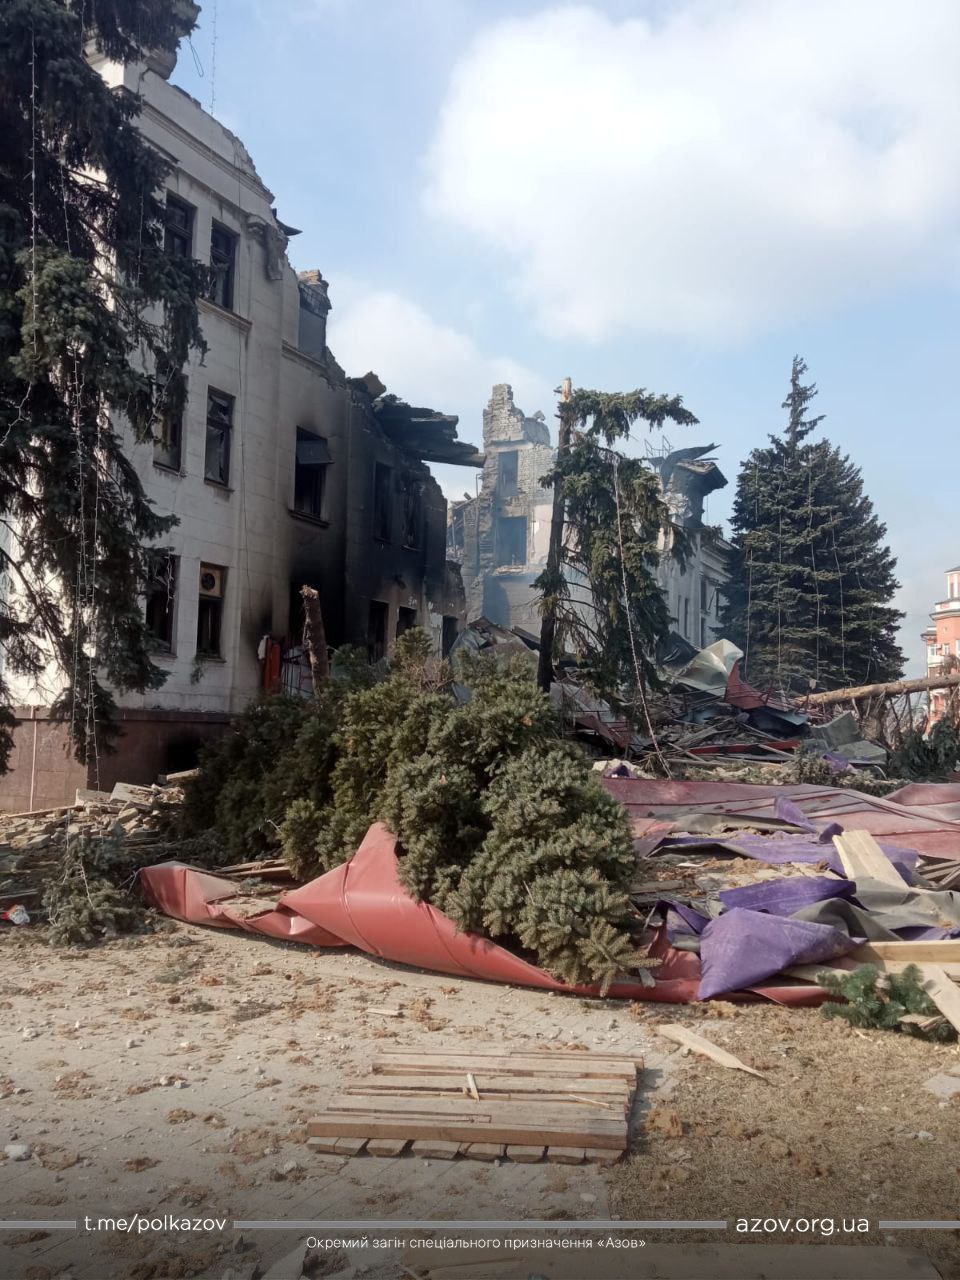 Вчора війська РФ обстріляли школу мистецтв в Маріуполі, де ховалися близько 400 осіб. Будівля зруйнована, люди досі під завалами, - міськрада